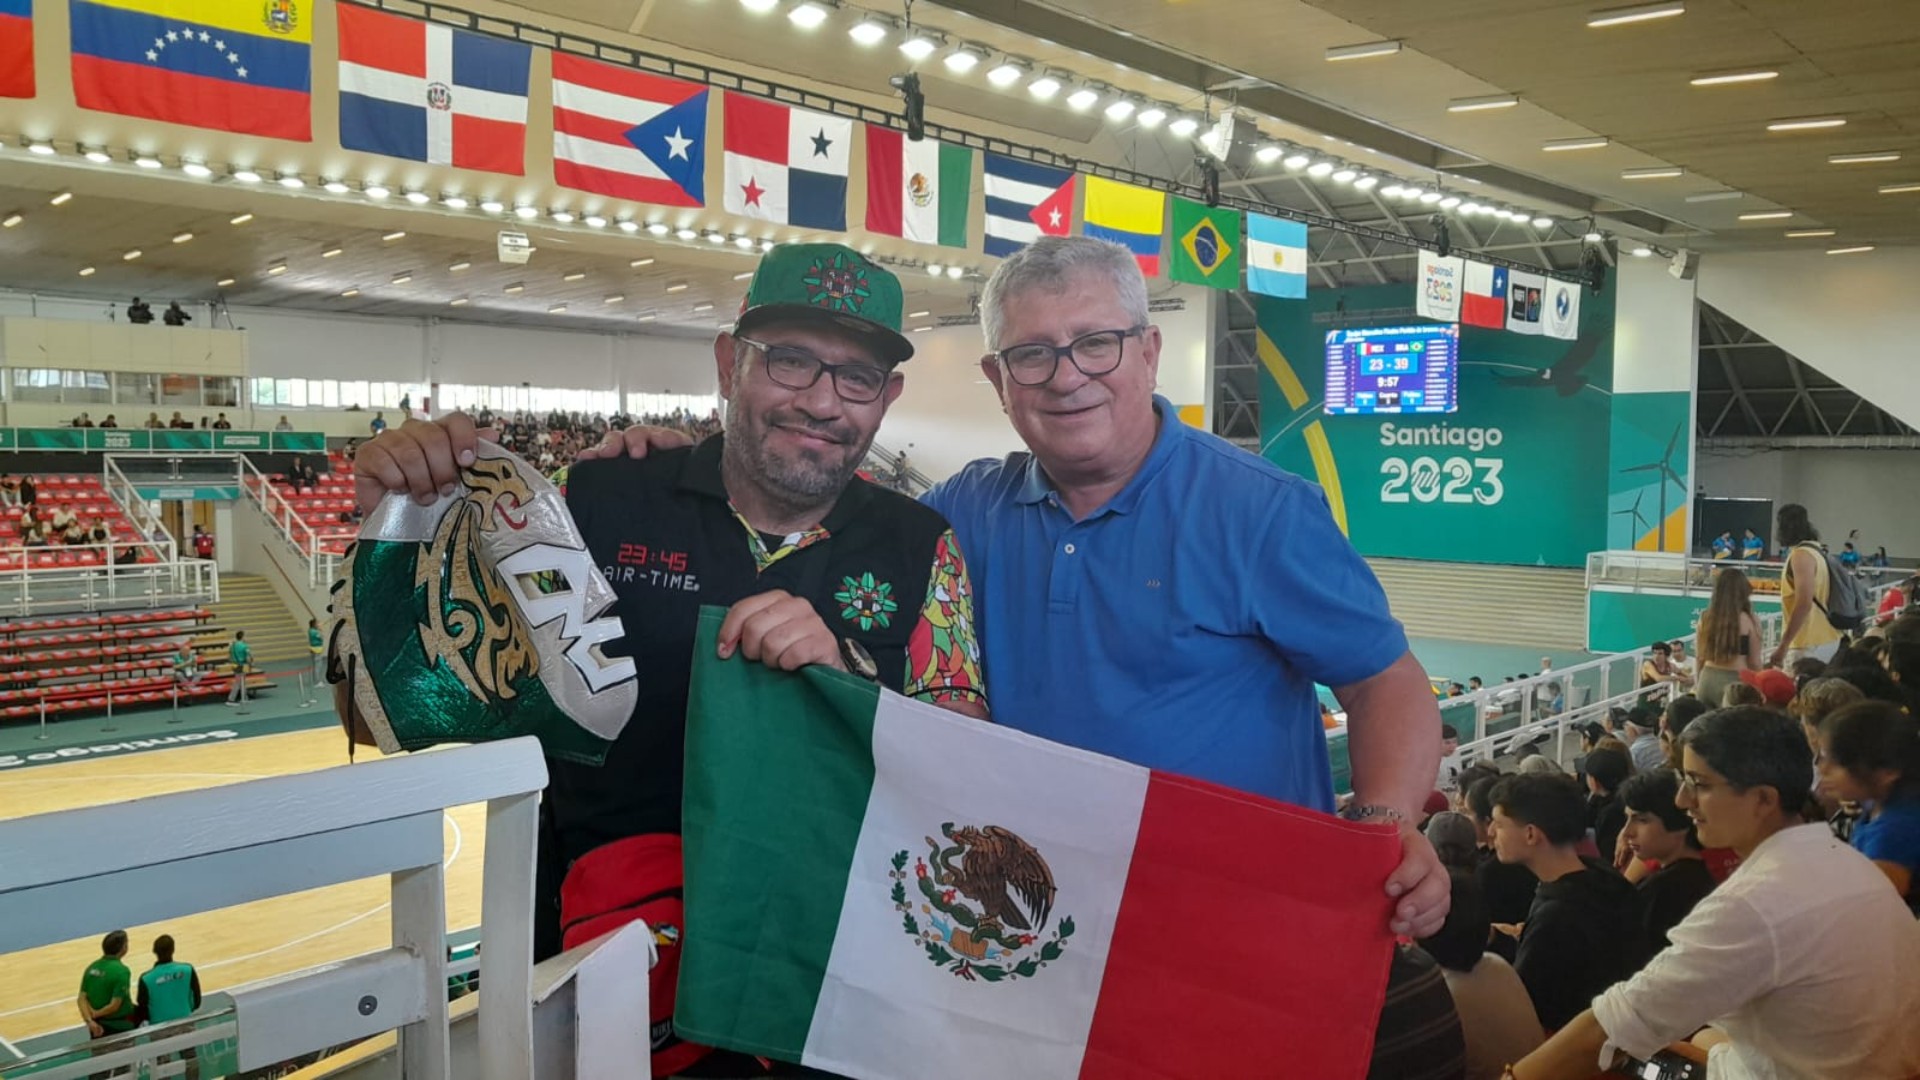 Se conocieron en la tribuna y el básquetbol los hizo amigos: la historia del mexicano Óscar y el chileno Patricio